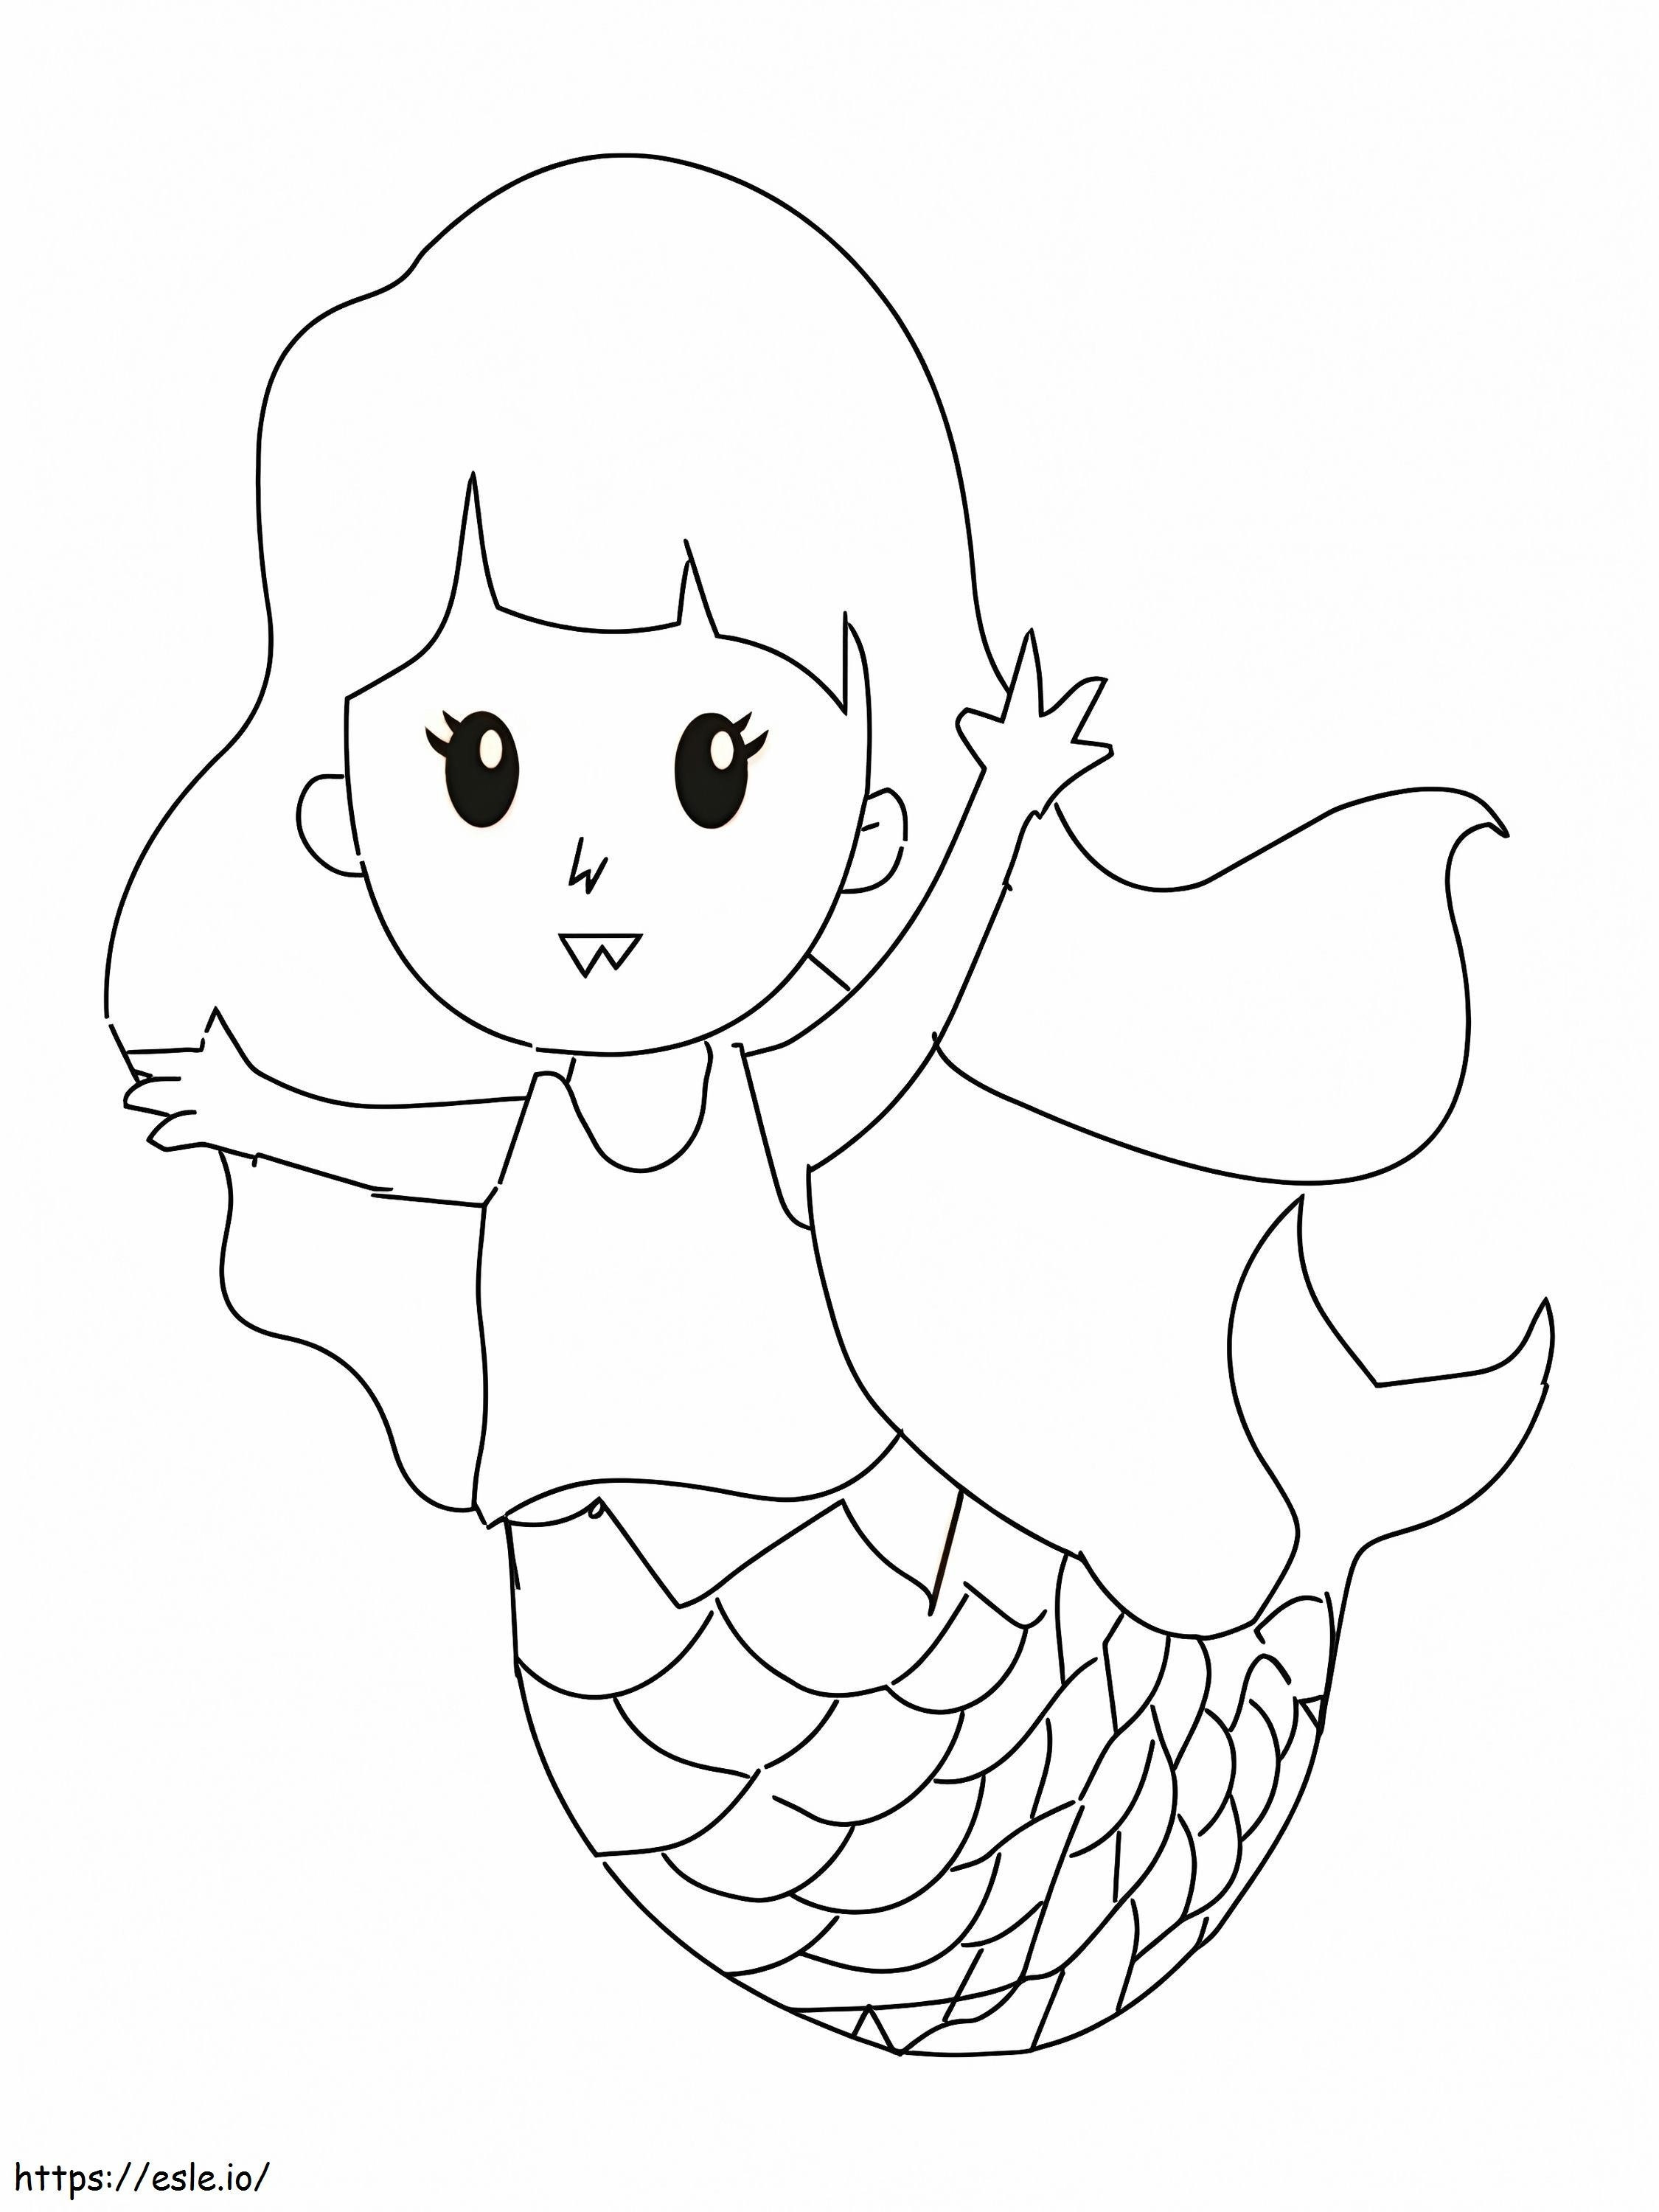 Cute Kid Mermaid coloring page